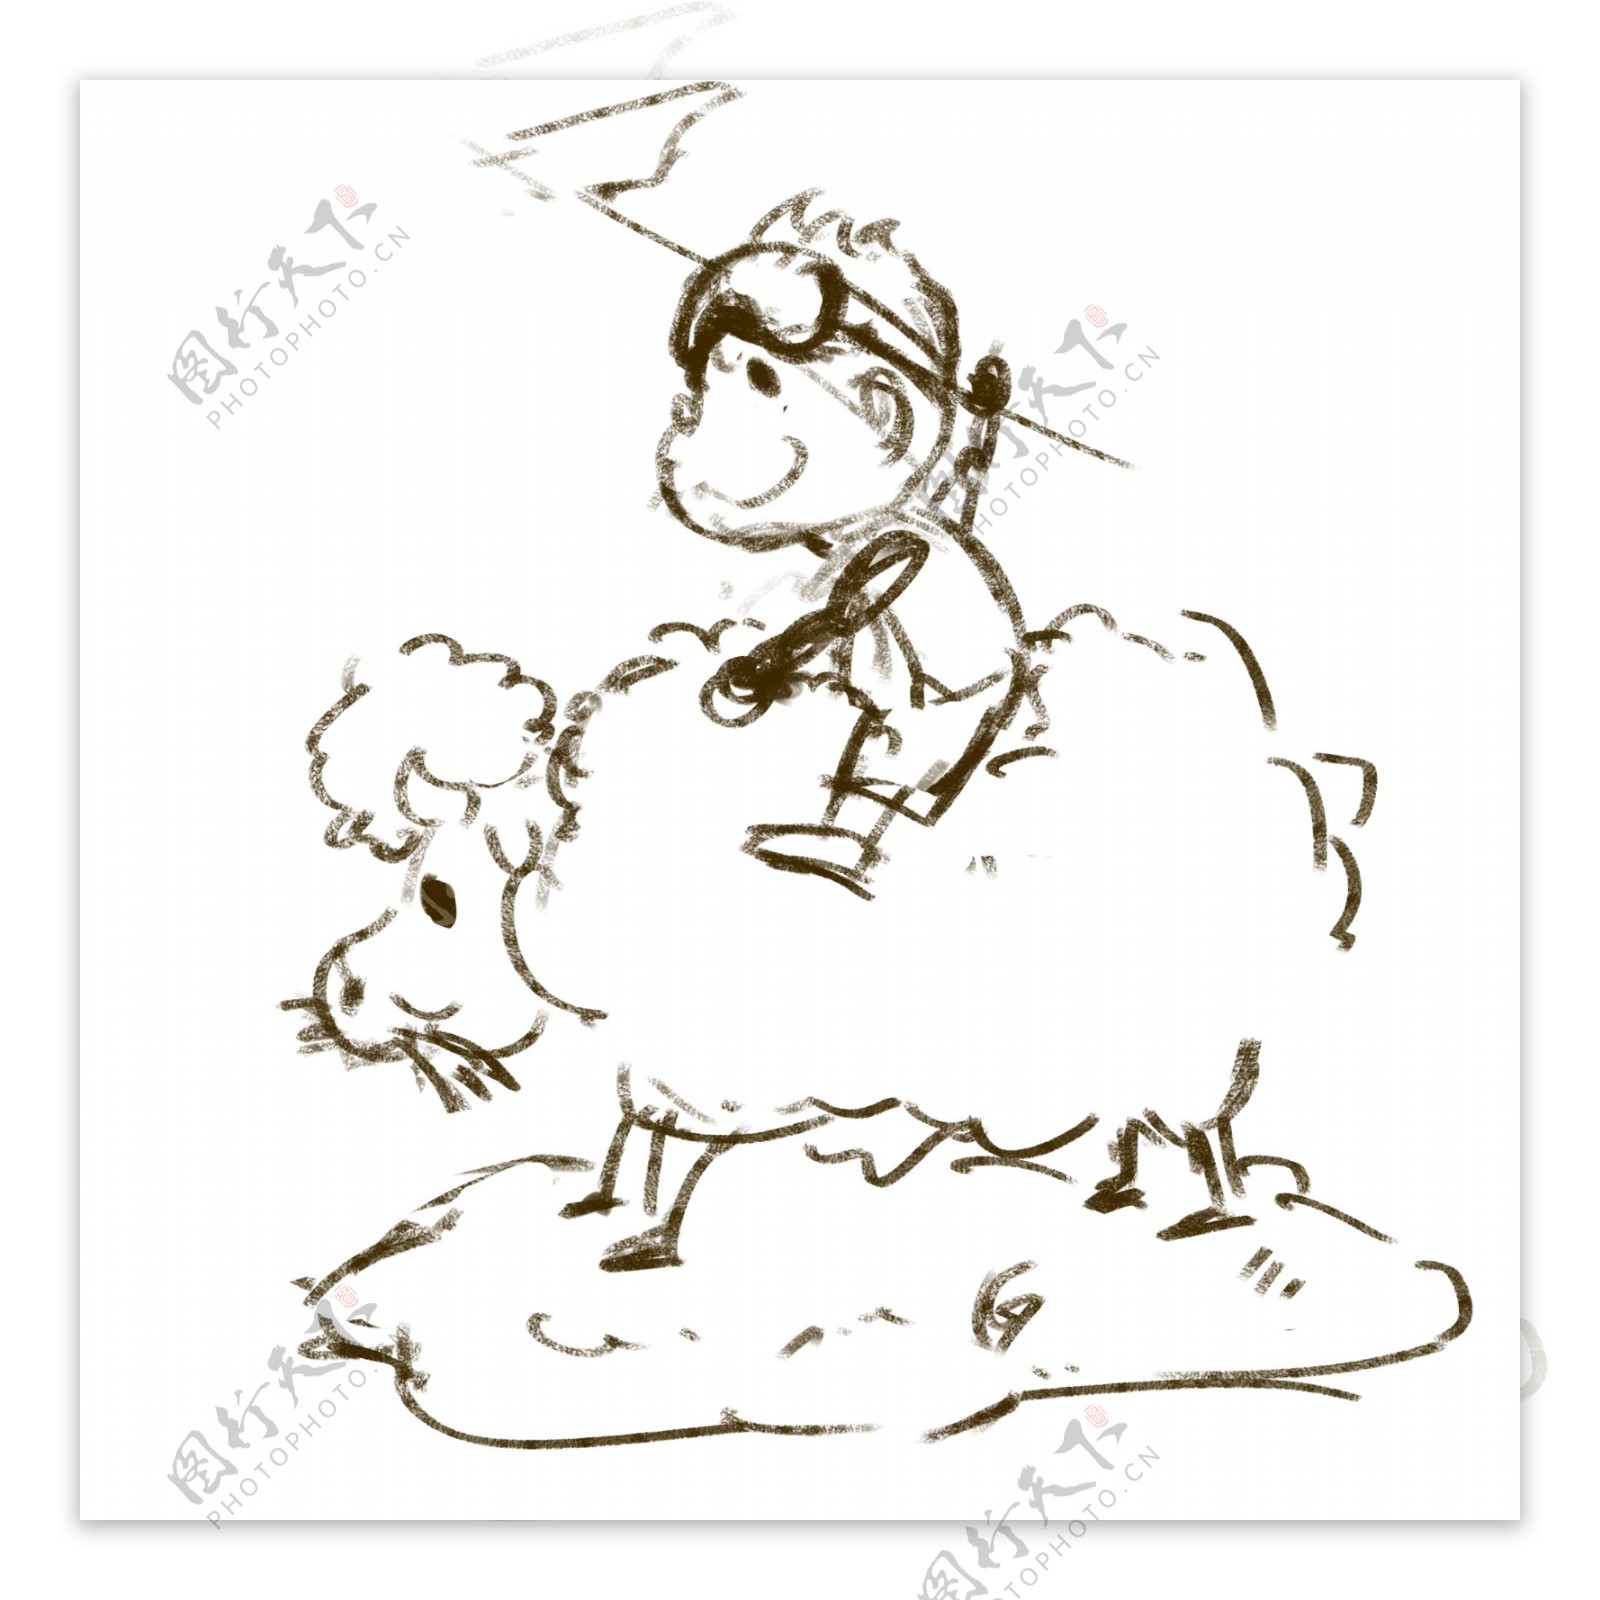 清明节骑羊的男孩插画